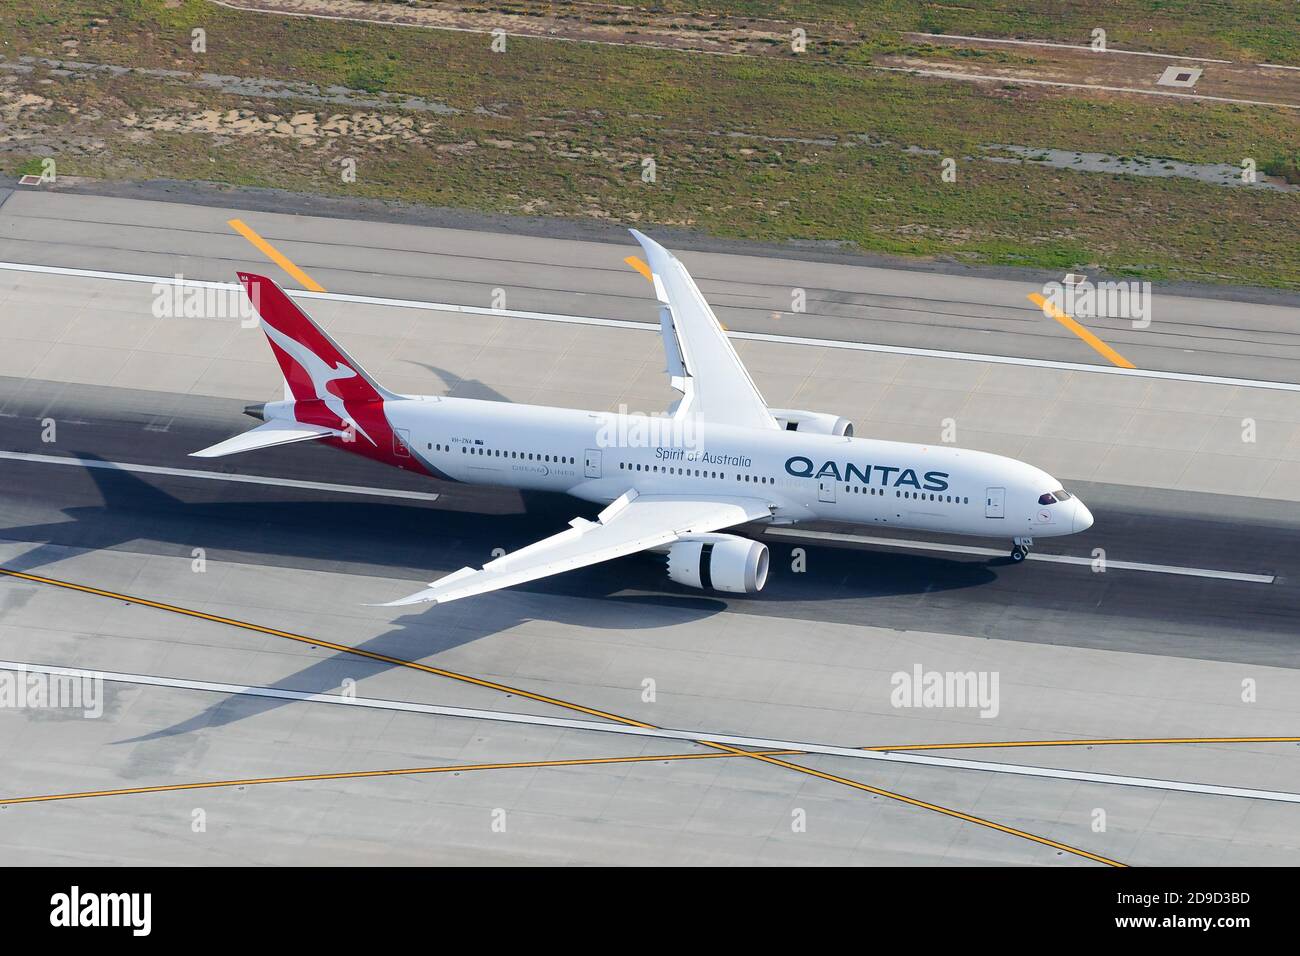 Qantas Airways Boeing 787 Flugzeuge landen mit Spoiler und Querruder. Luftaufnahme von Qantas Dreamliner Flugzeug mit Spoiler und Airleron im Einsatz. Stockfoto